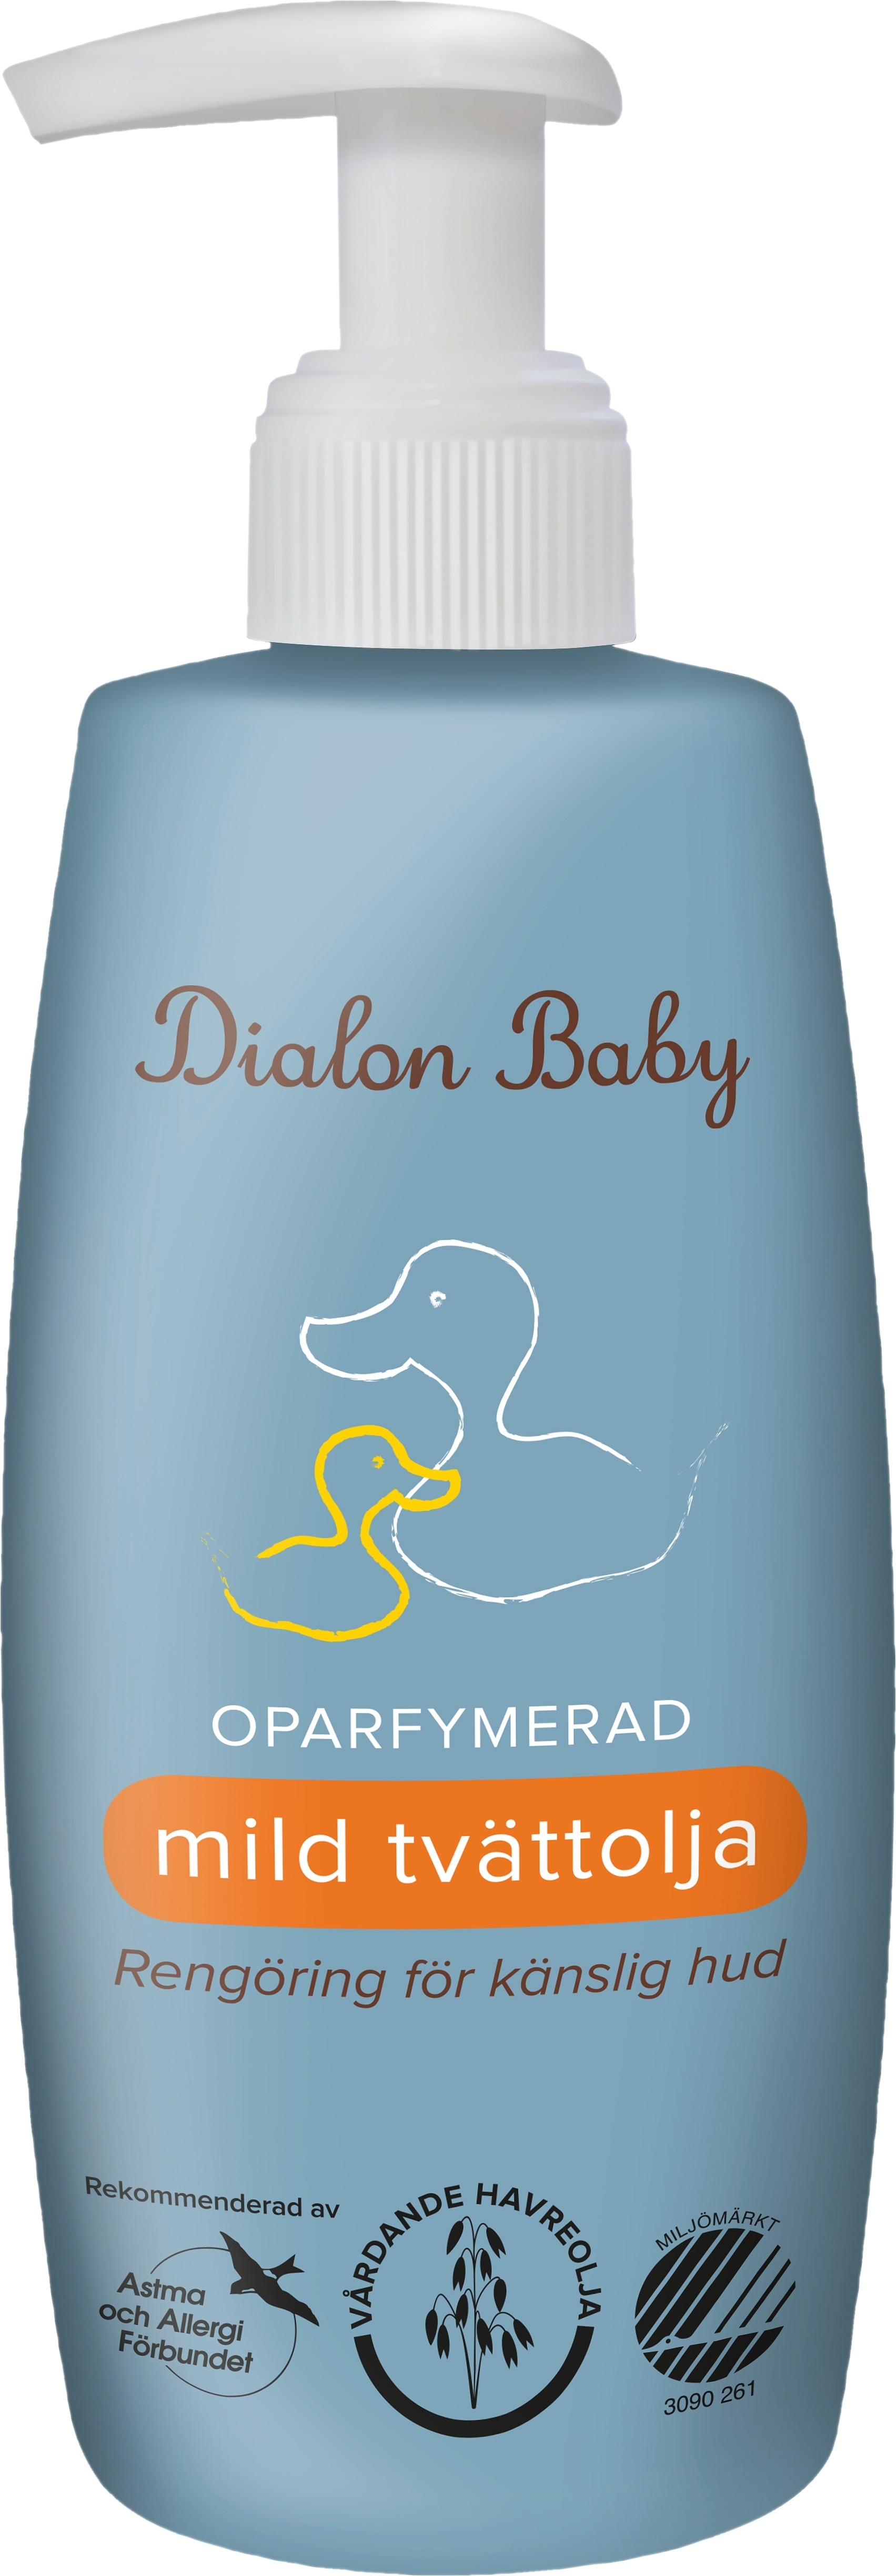 Dialon Baby Mild Tvättolja 200 ml